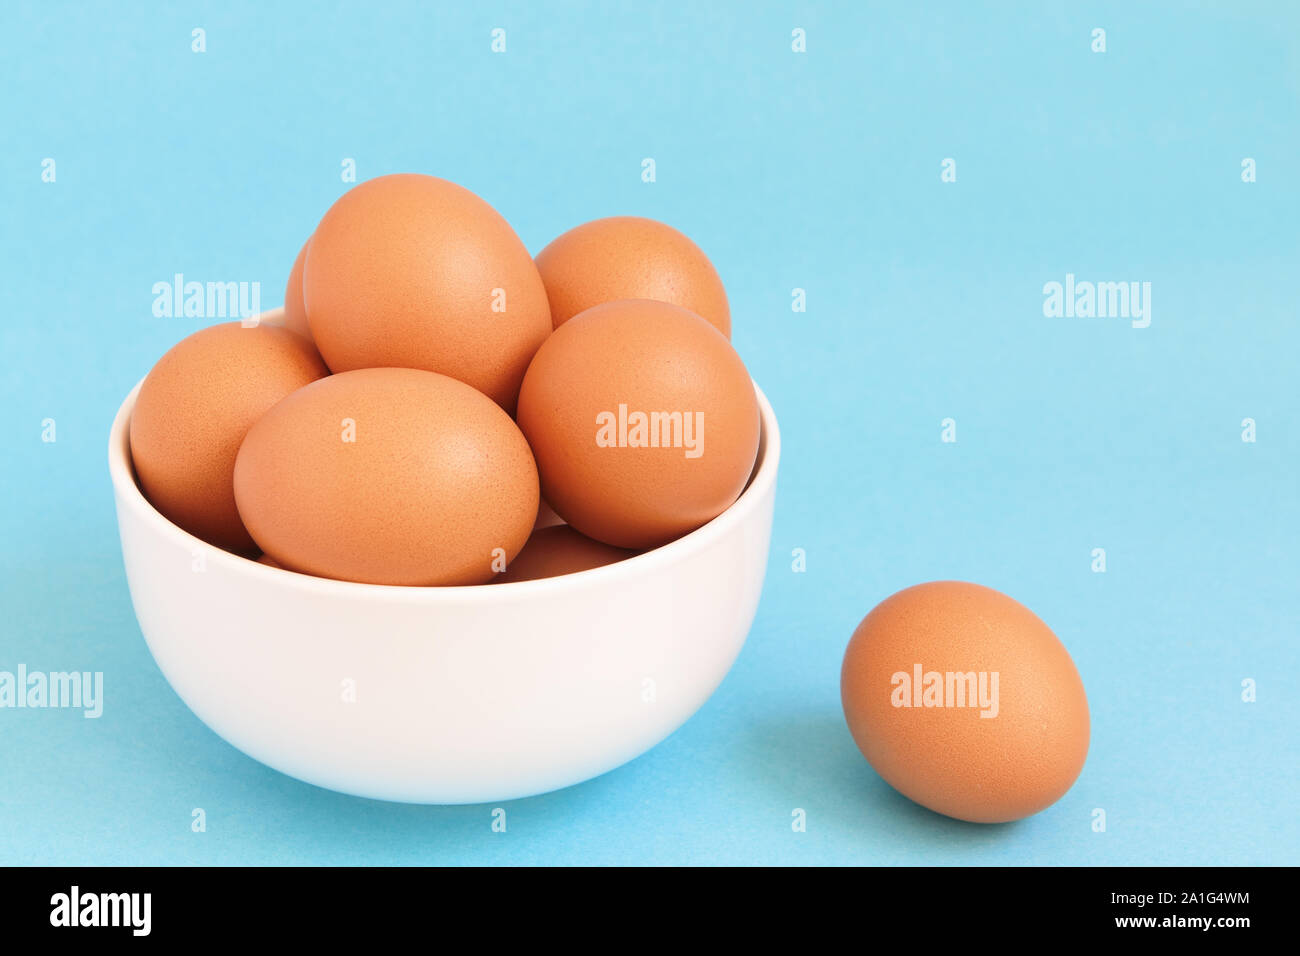 Fresca bruna di gallina uova nella vaschetta di colore bianco su fondo azzurro Foto Stock